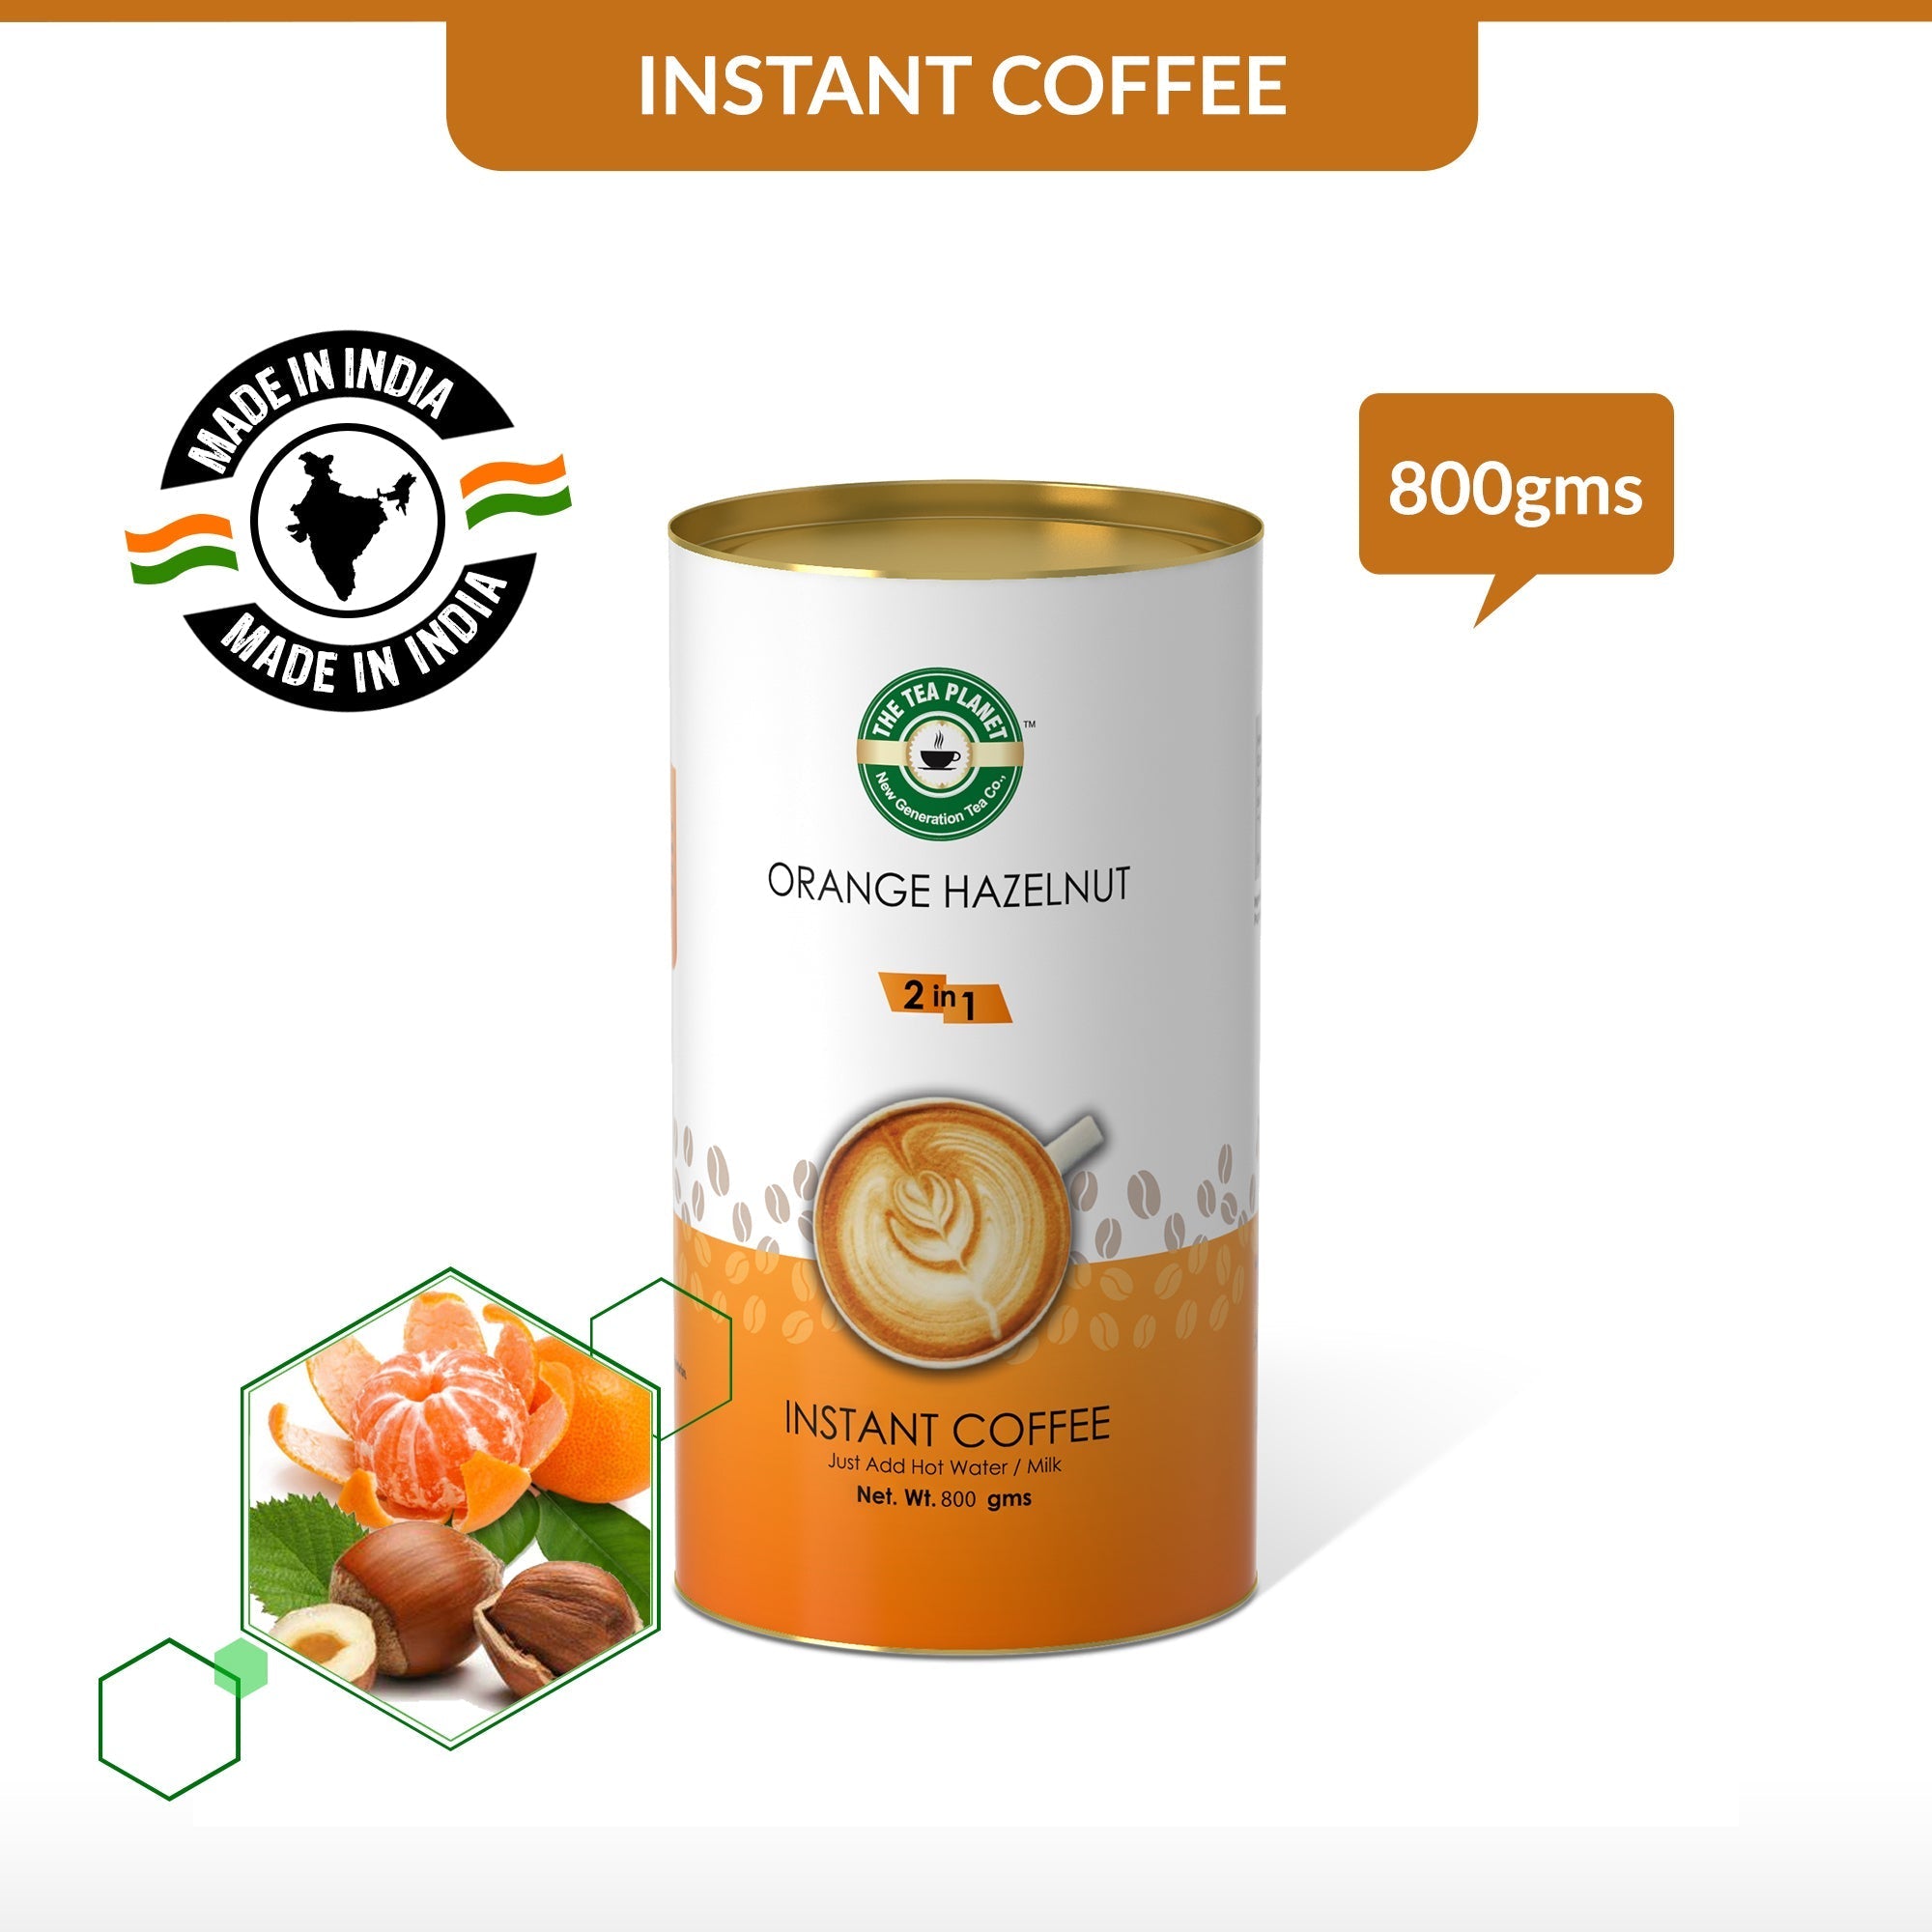 Orange Hazelnut Instant Coffee Premix (2 in 1) - 800 gms